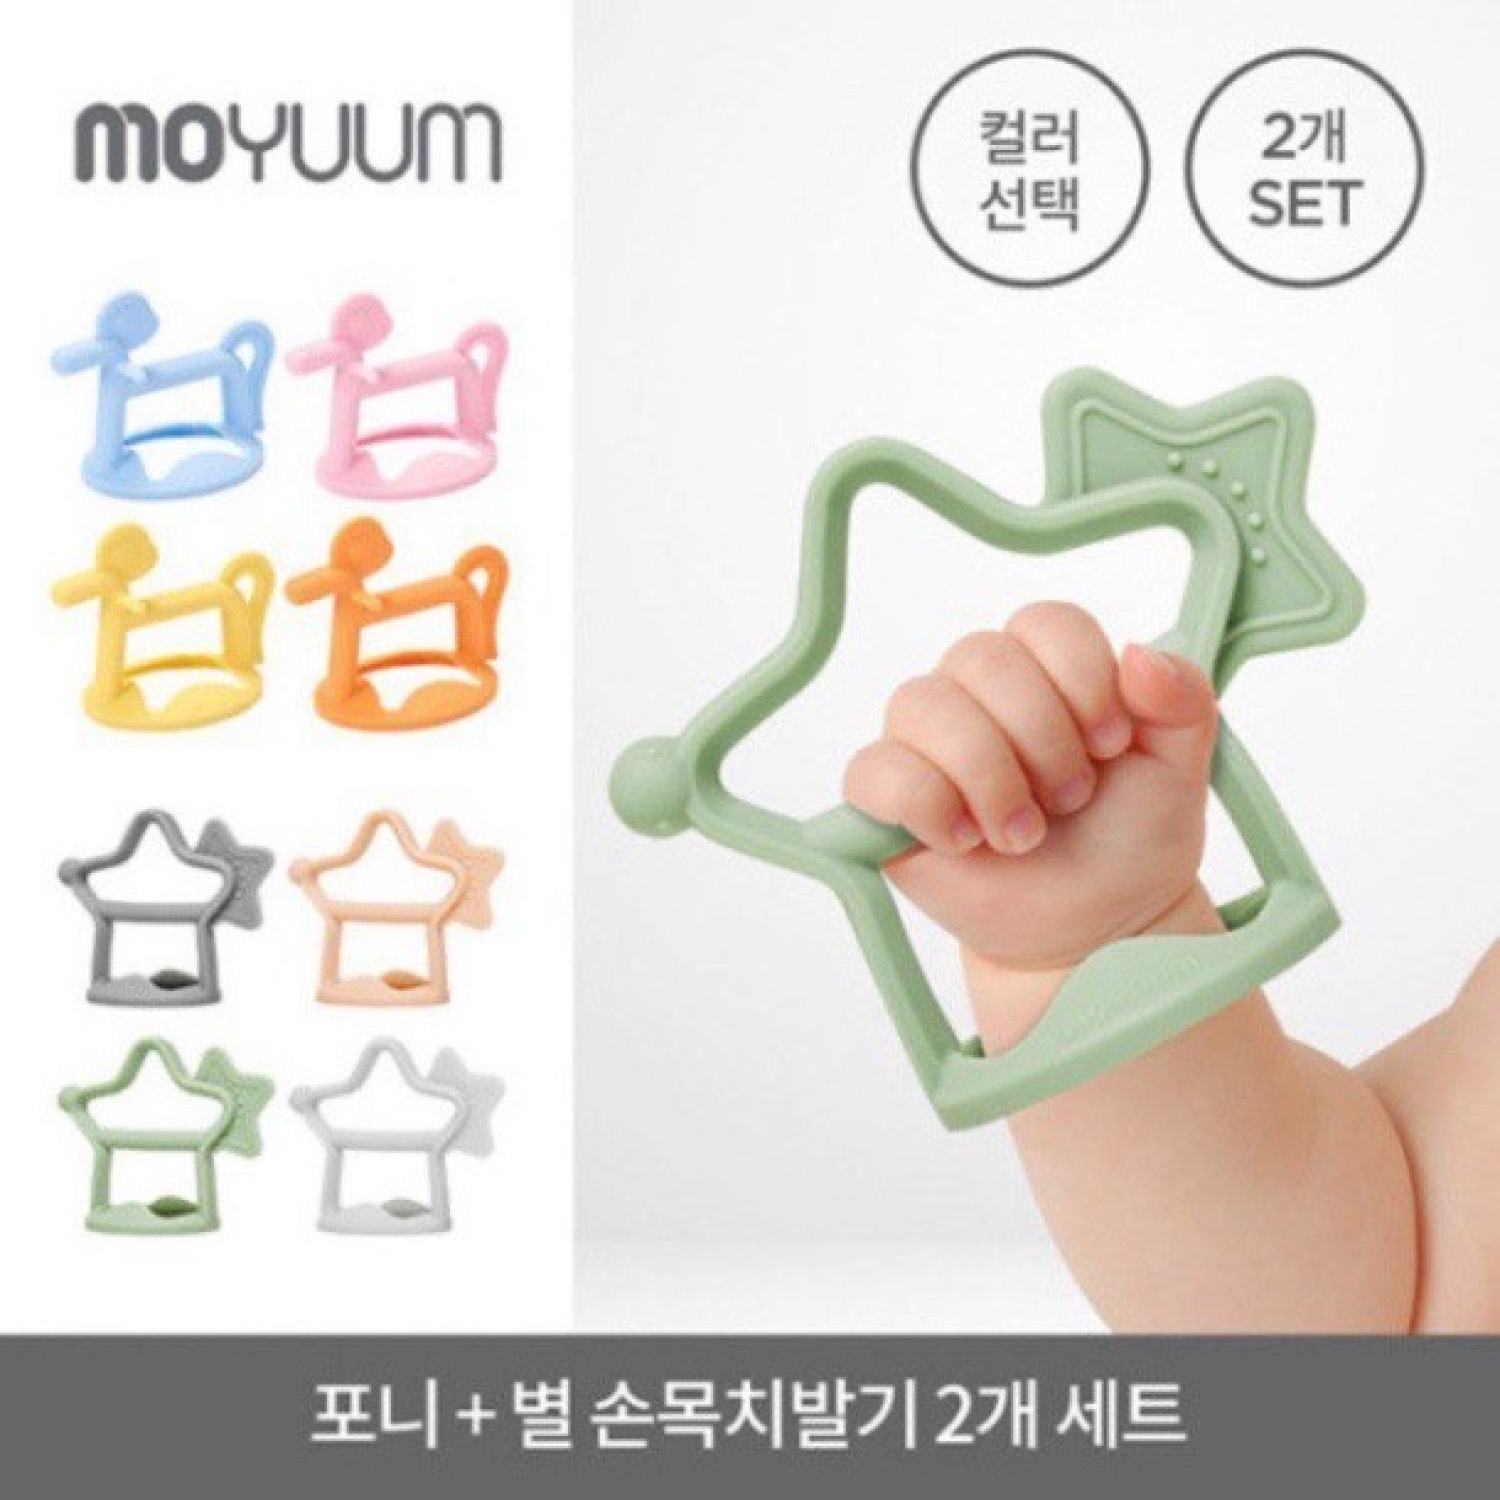 CHÍNH HÃNG Gặm nướu Moyuum silicon Hàn Quốc cao cấp cho bé từ 3 tháng tuổi